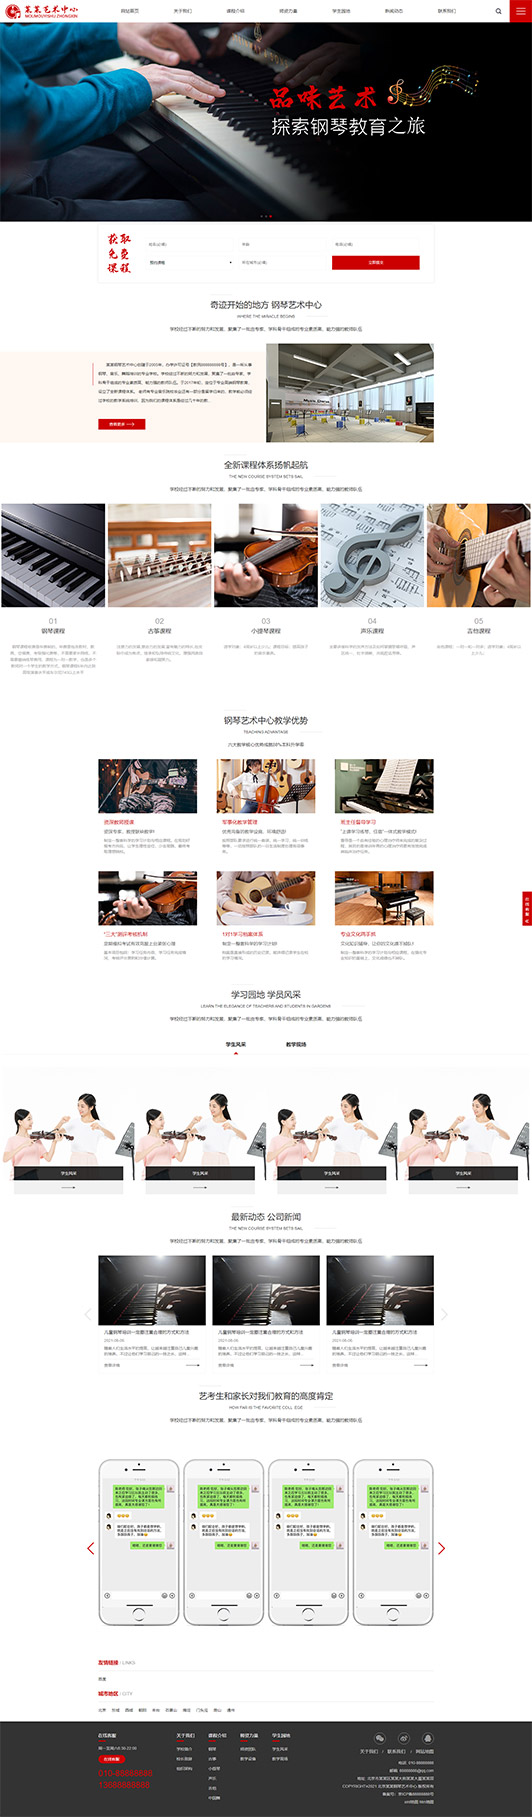 台州钢琴艺术培训公司响应式企业网站